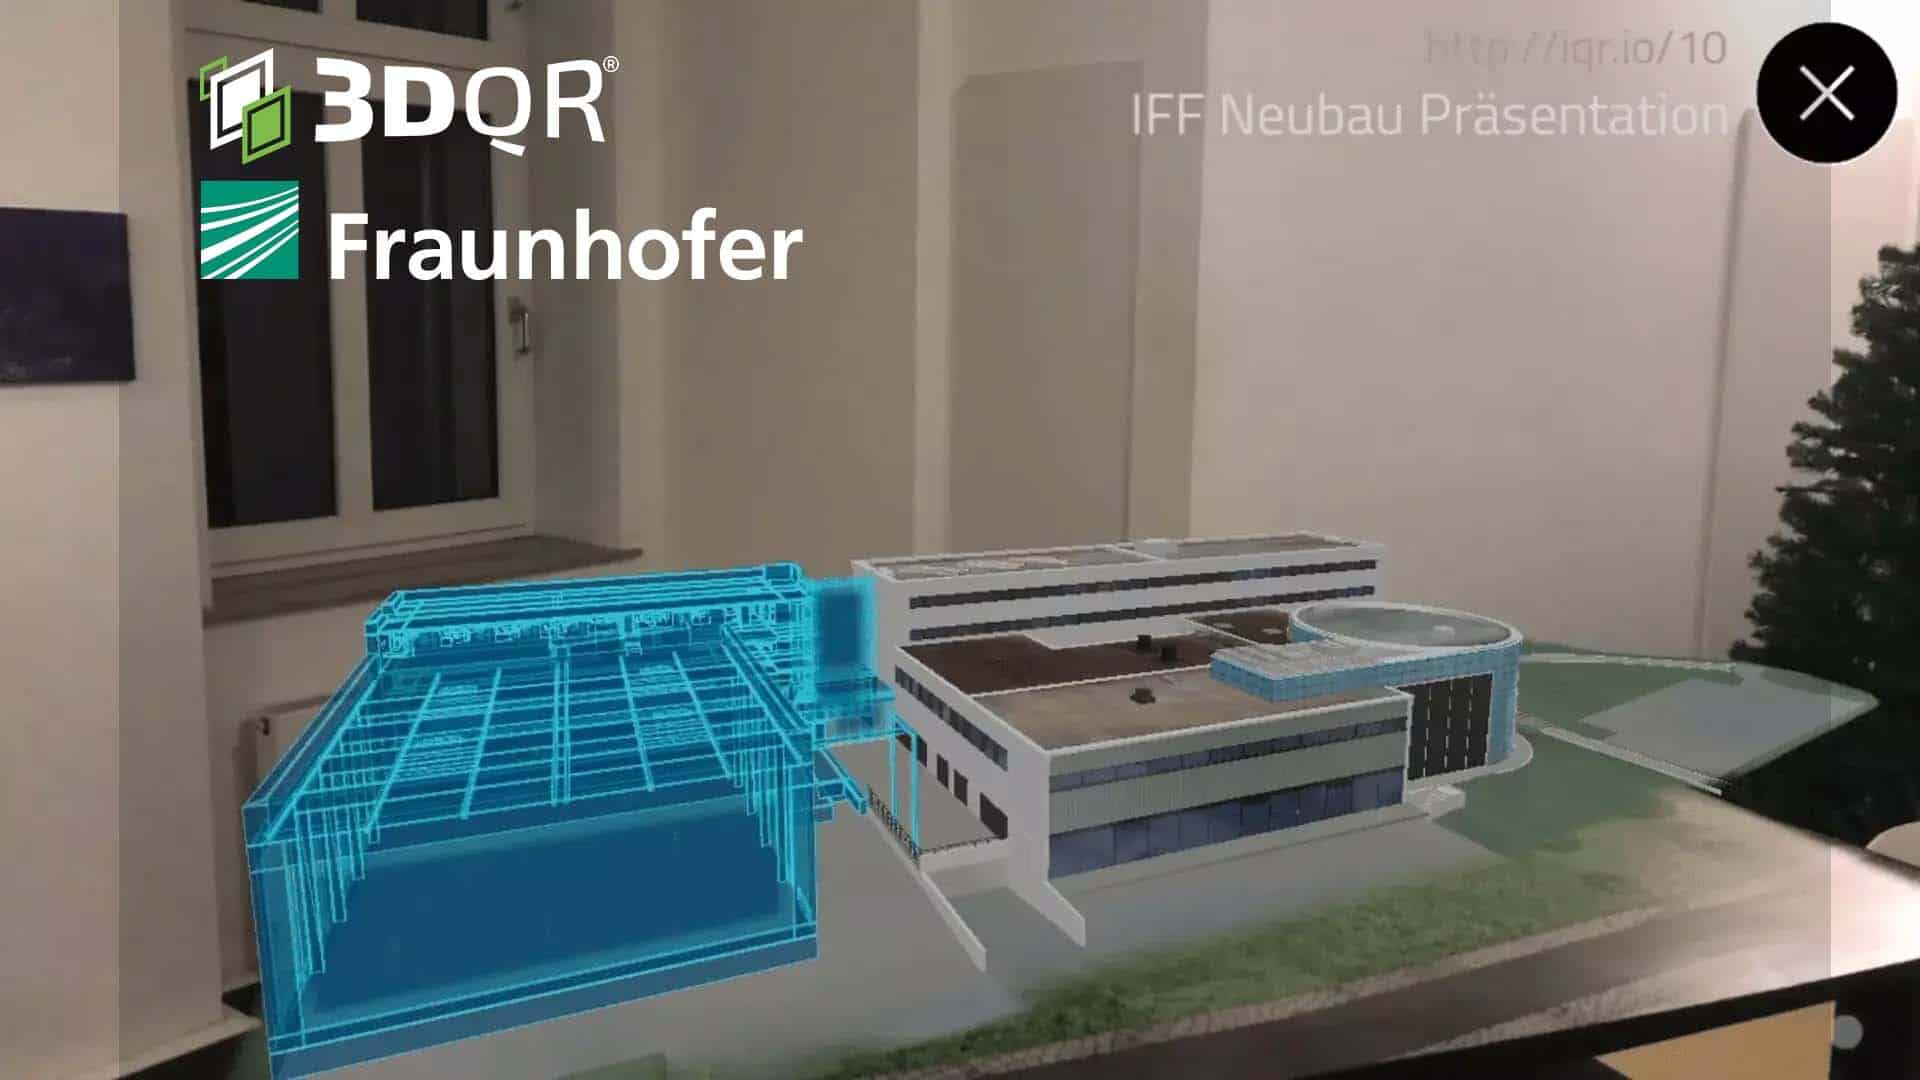 Architektur in Augmented Reality für das Fraunhofer IFF